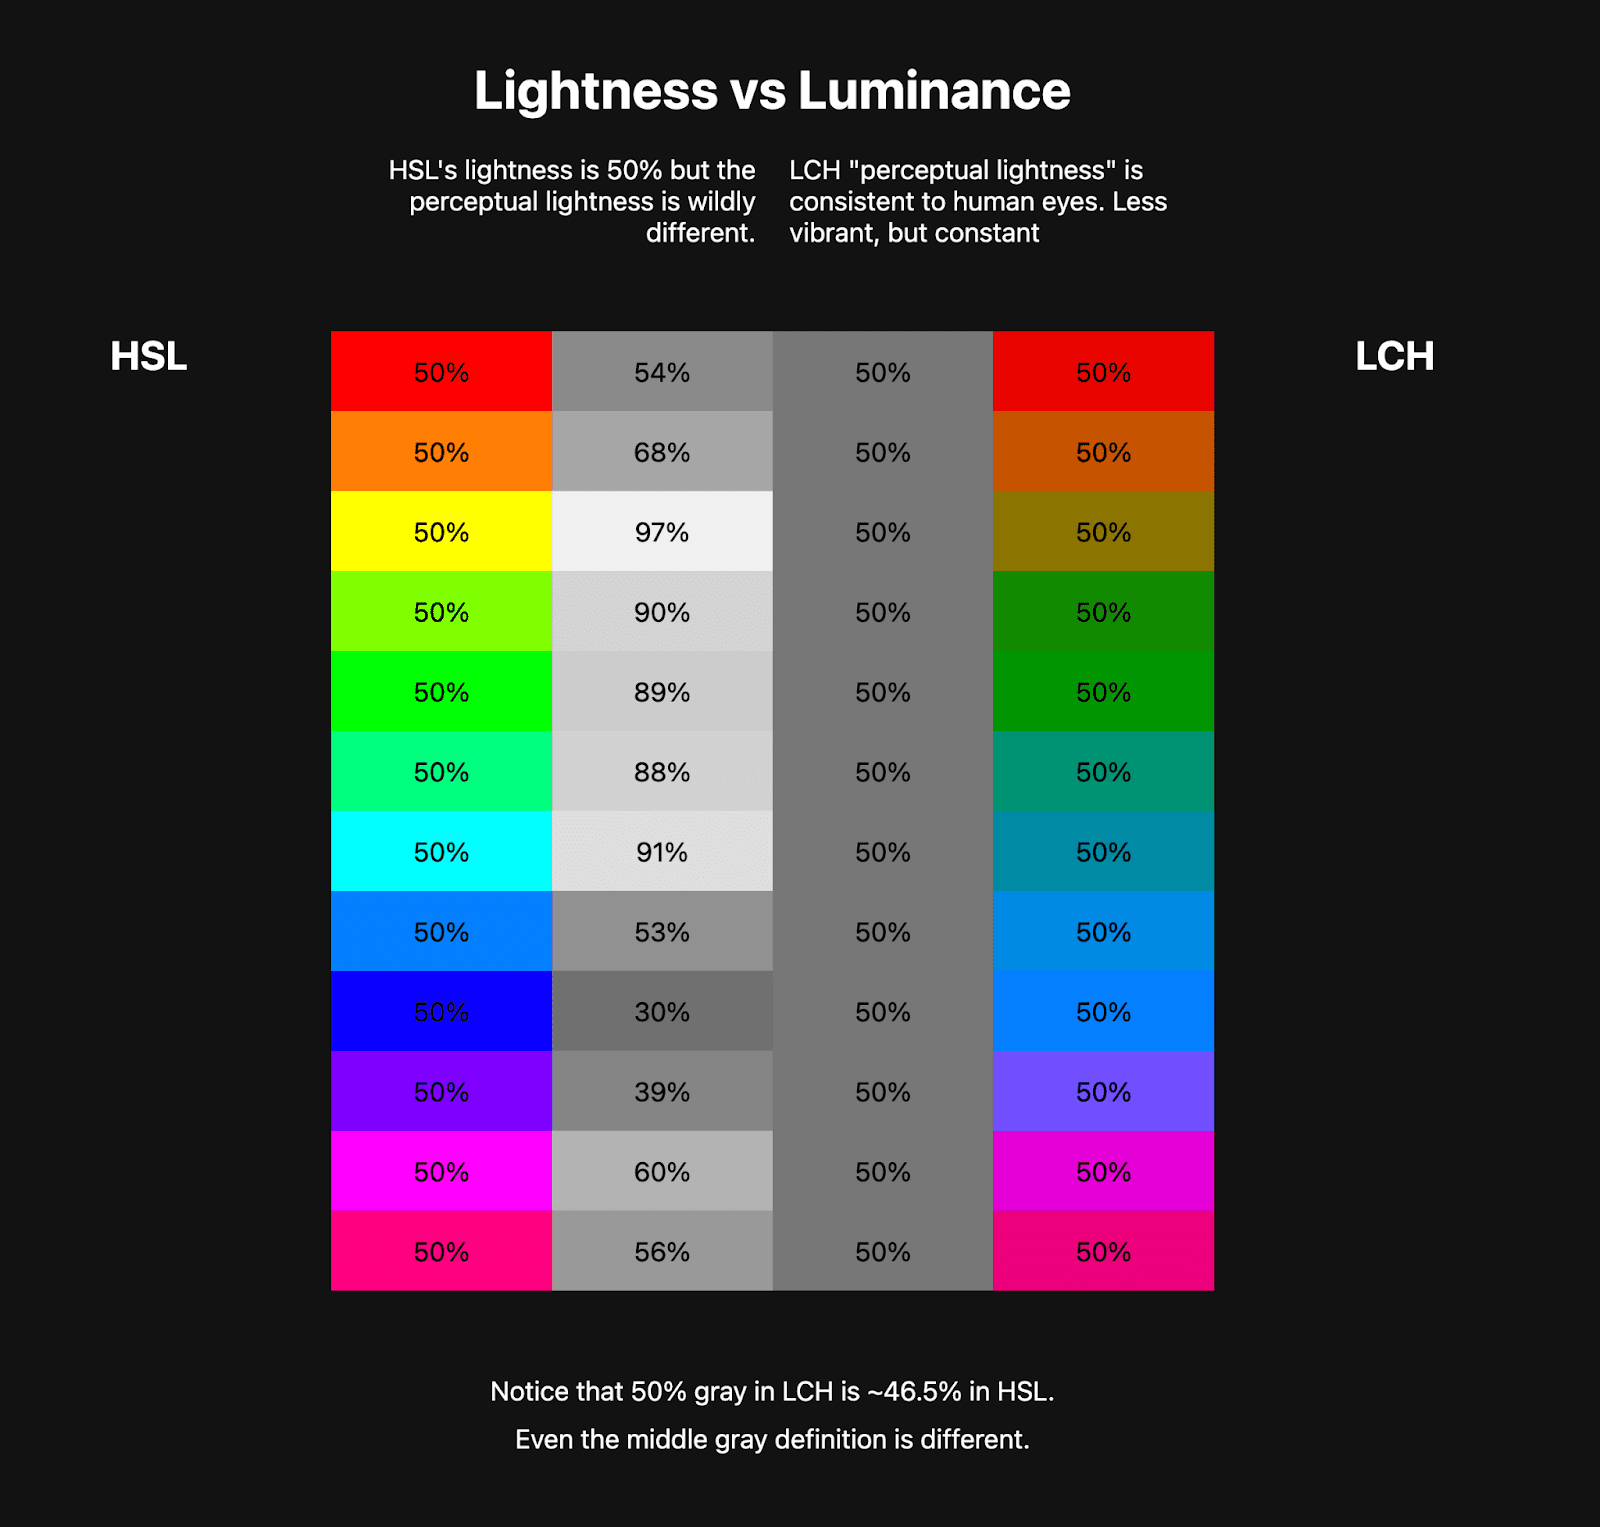 Twee kleurtabellen staan ​​naast elkaar. De eerste tabel toont een HSL-regenboog van ongeveer tien kleuren en daarnaast staan ​​grijswaardenkleuren die de lichtheid van die HSL-kleuren weergeven. De tweede tabel toont een LCH-regenboog, veel minder levendig, maar de grijstinten ernaast zijn consistent. Dit laat zien hoe LCH een gezonde constante lichtheidswaarde heeft, terwijl HSL dat niet heeft.